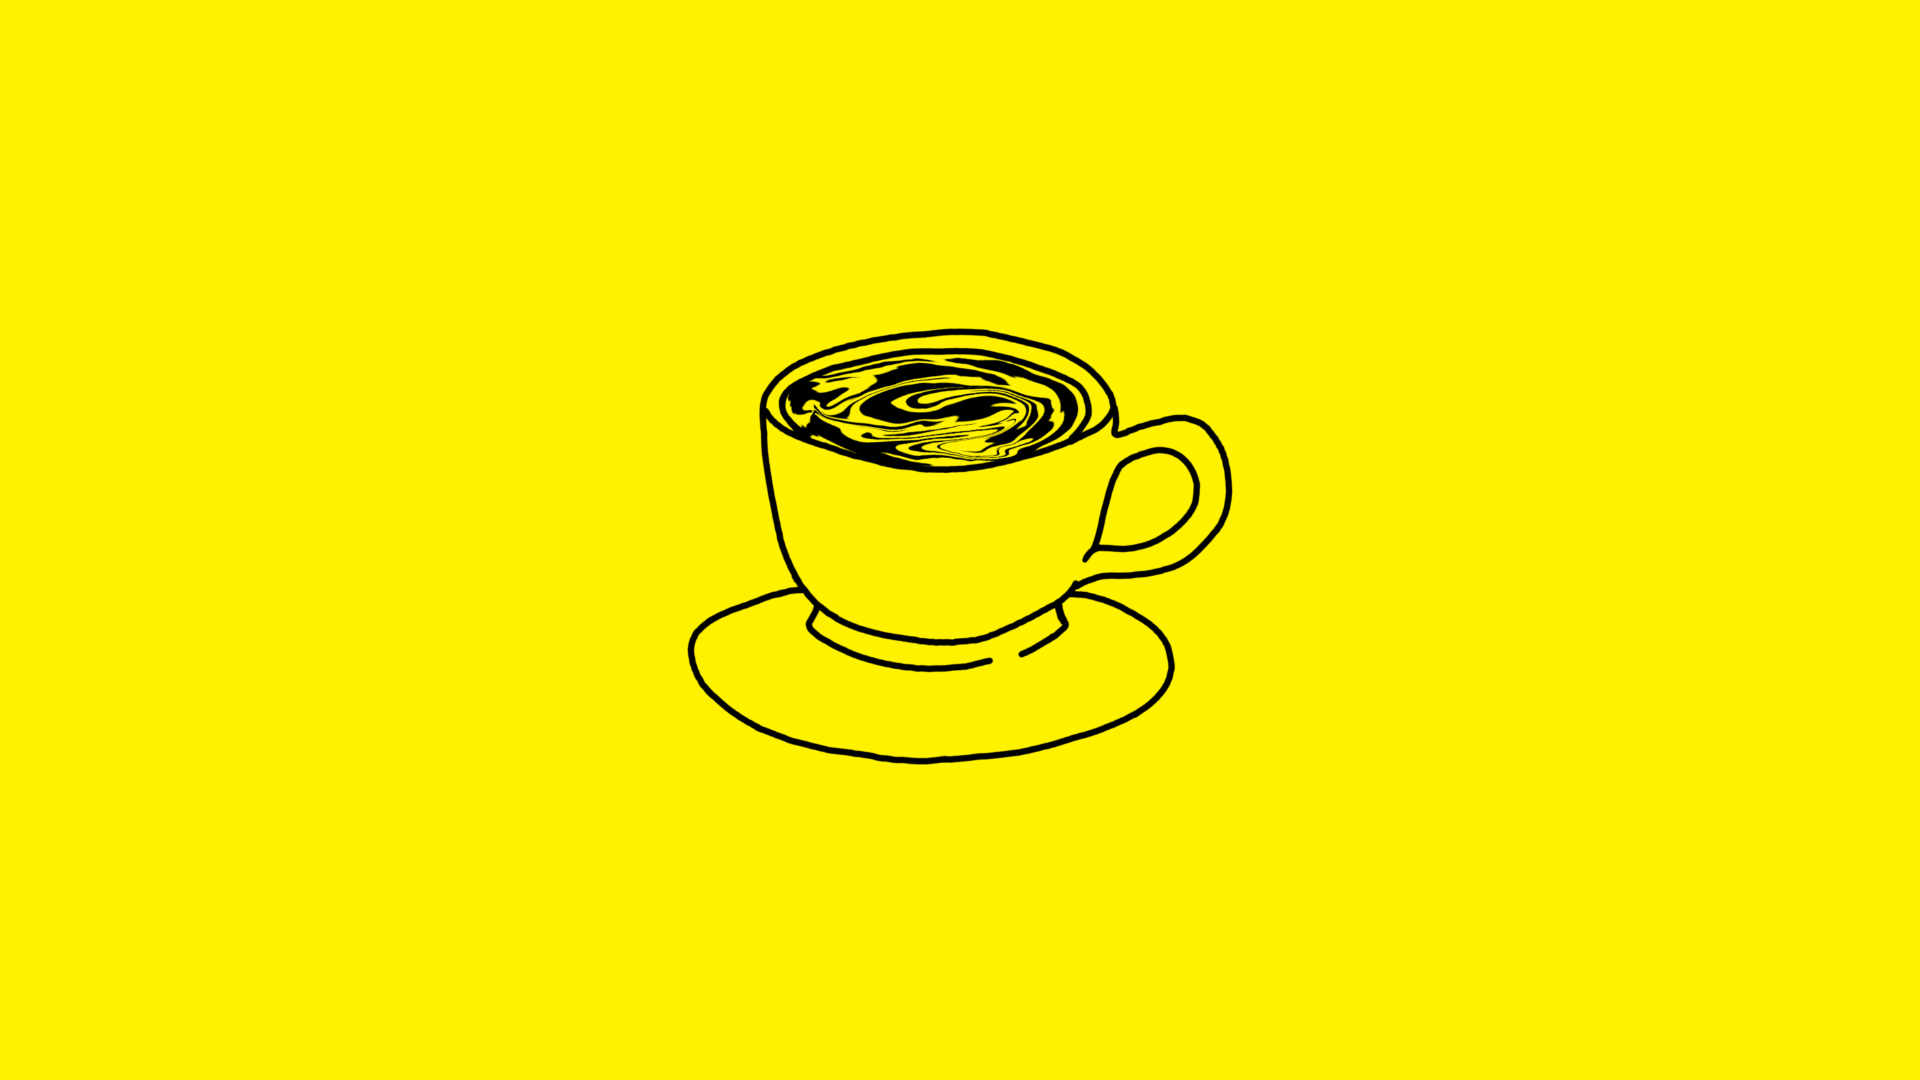 Czarny rysunek kawy na żółtym tle